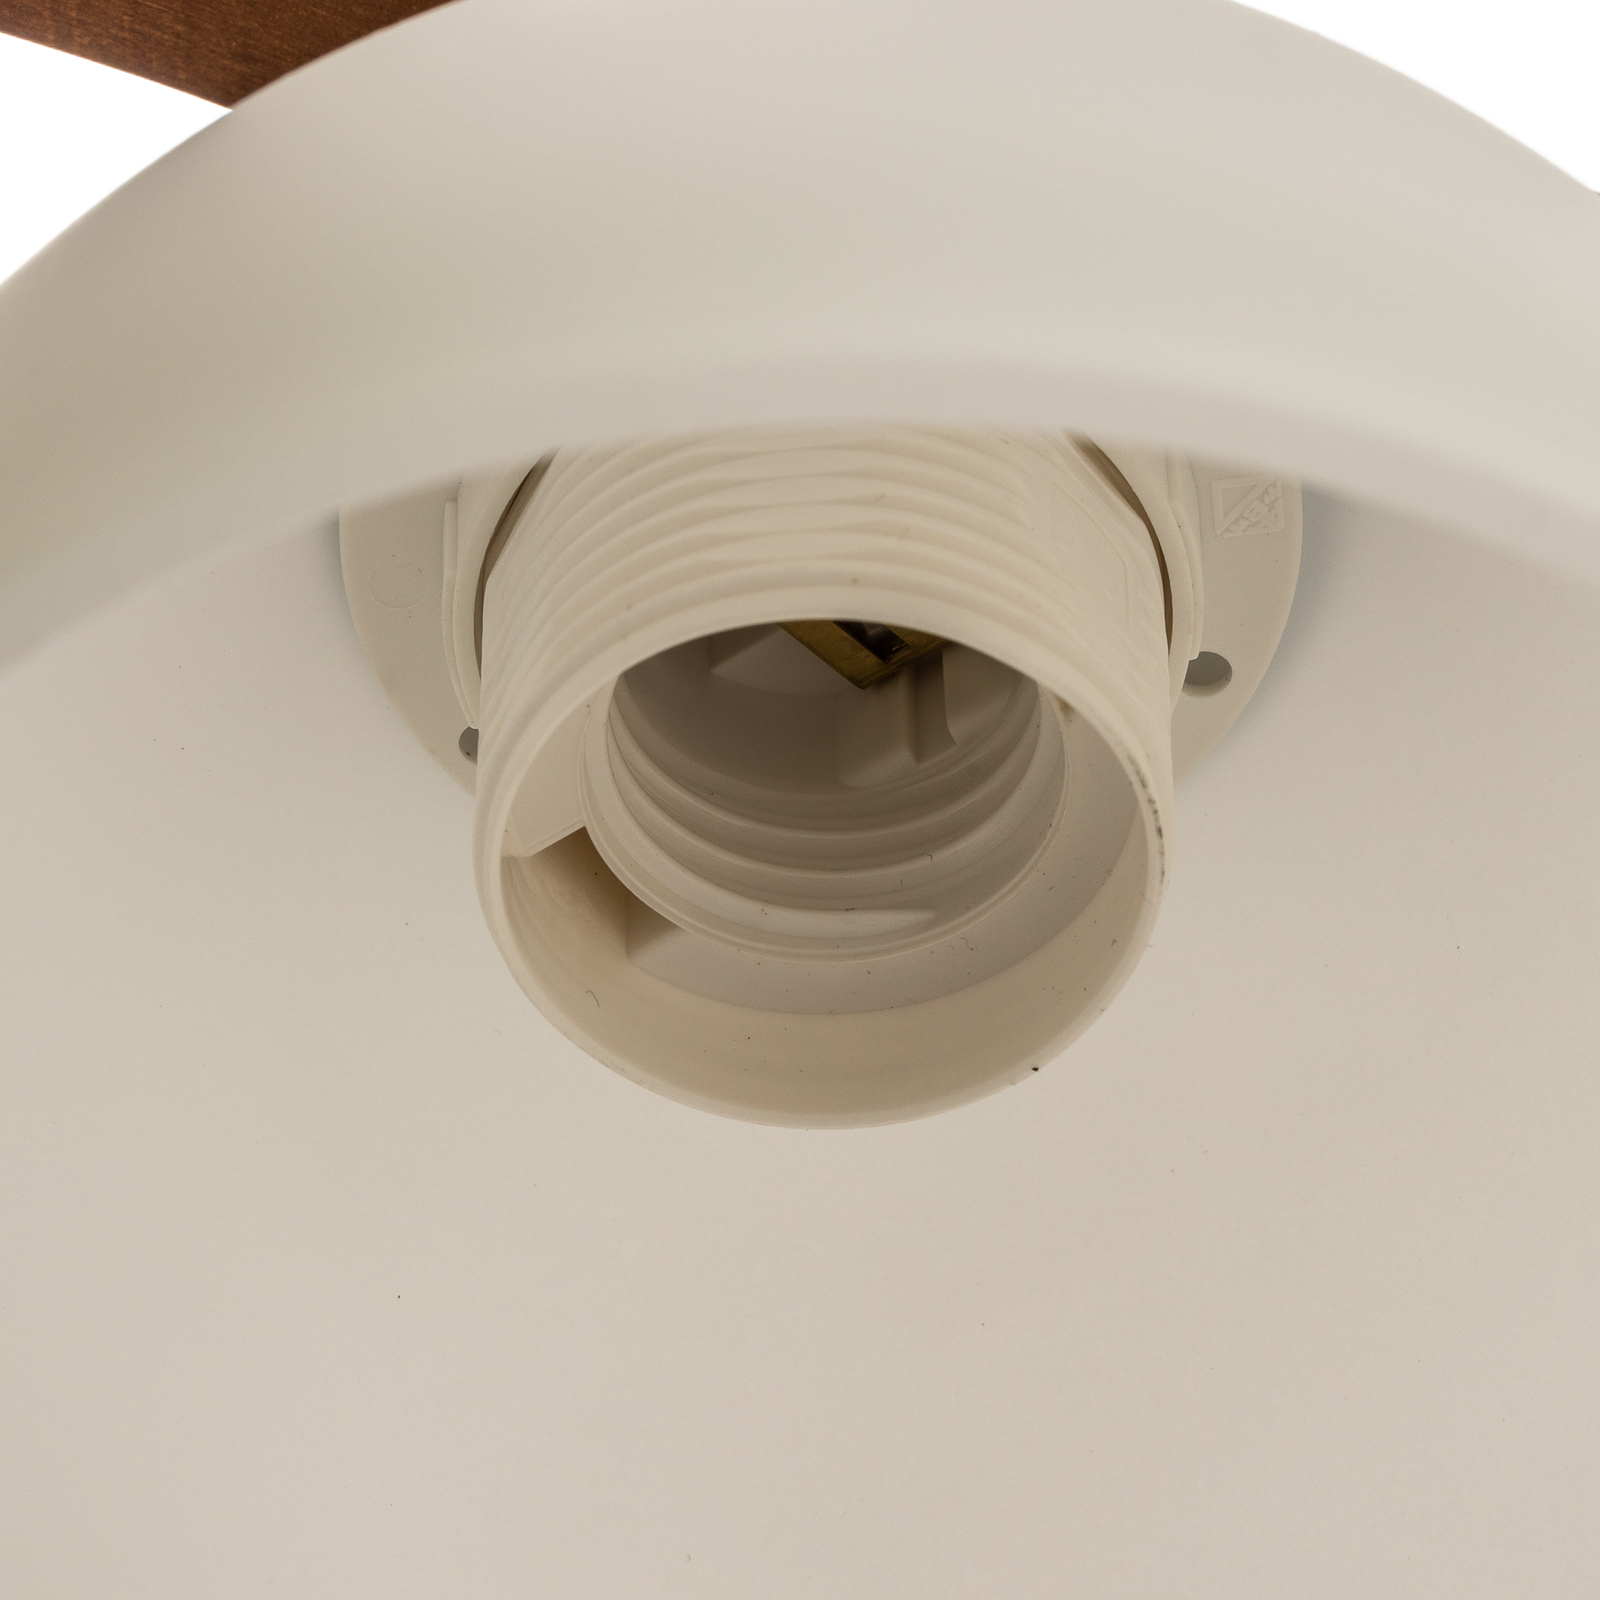 Brakel ceiling light five-bulb